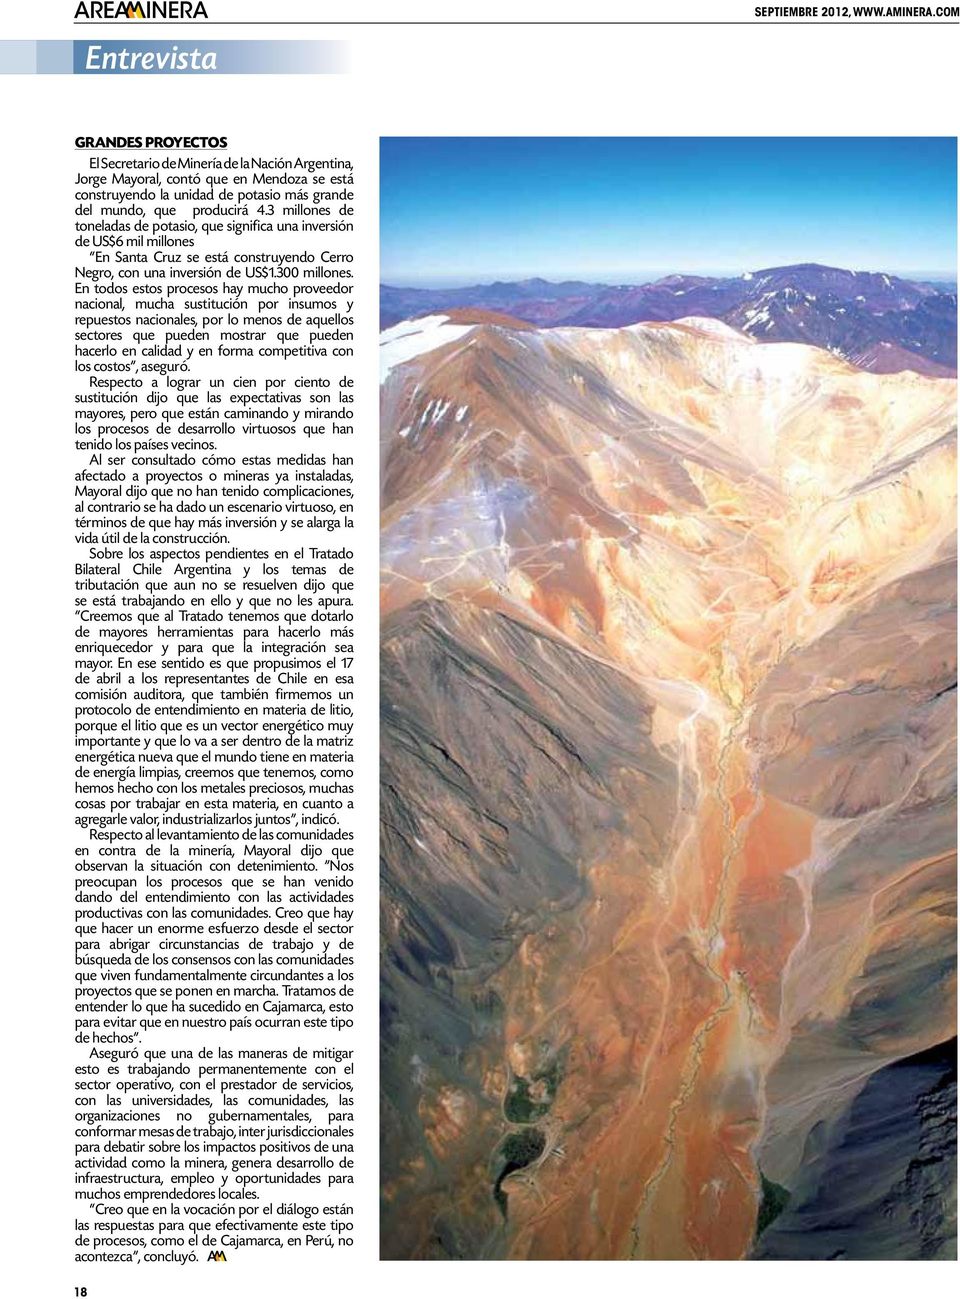 3 millones de toneladas de potasio, que significa una inversión de US$6 mil millones En Santa Cruz se está construyendo Cerro Negro, con una inversión de US$1.300 millones.